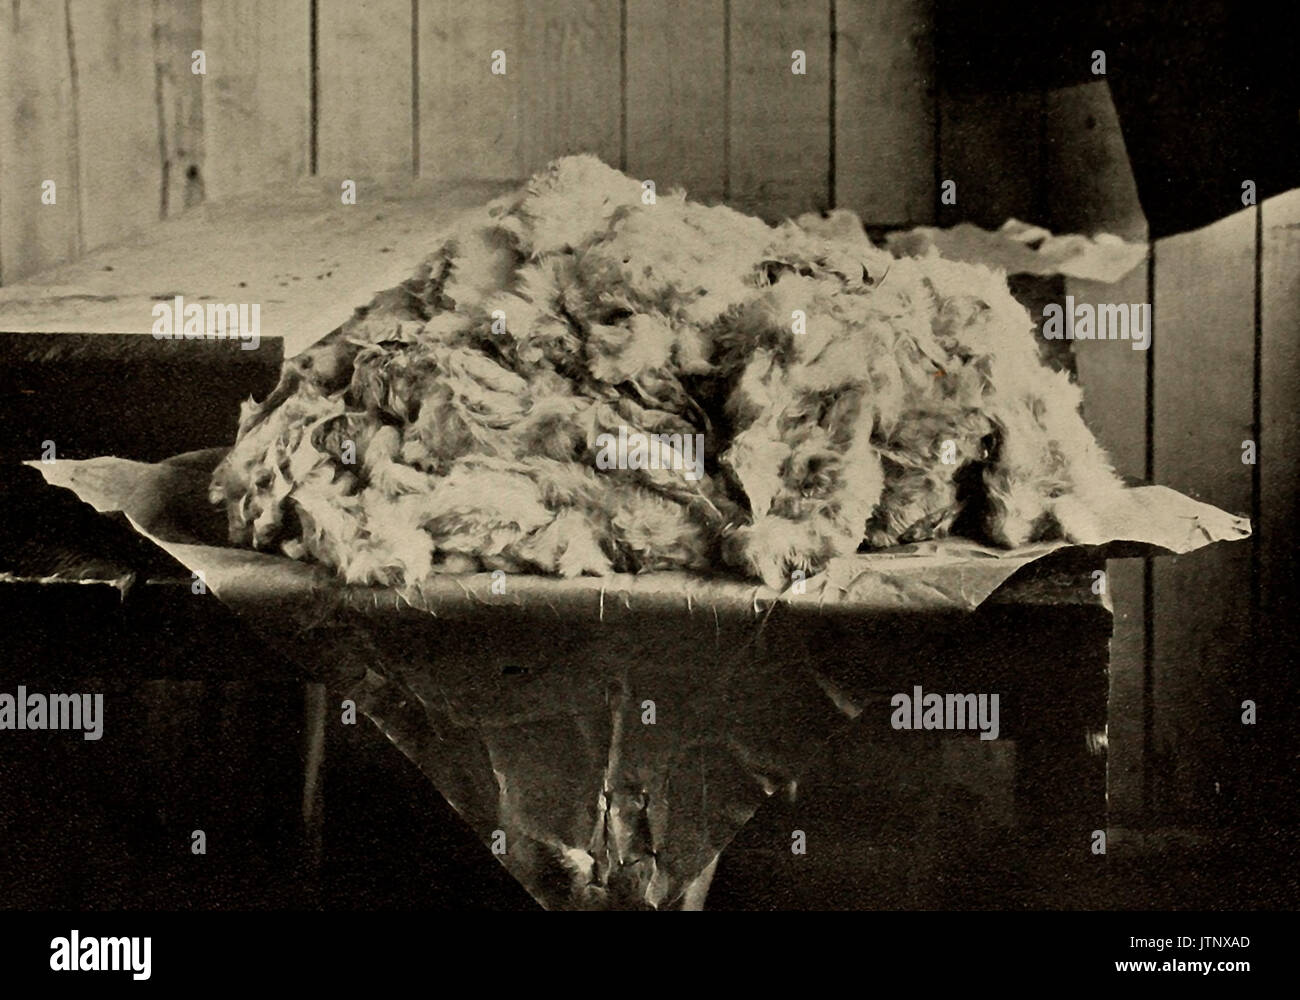 Fünf Pfund von Pelz, bereit zum ausgeblasen werden - Hutfabrik, ca. 1900 Stockfoto